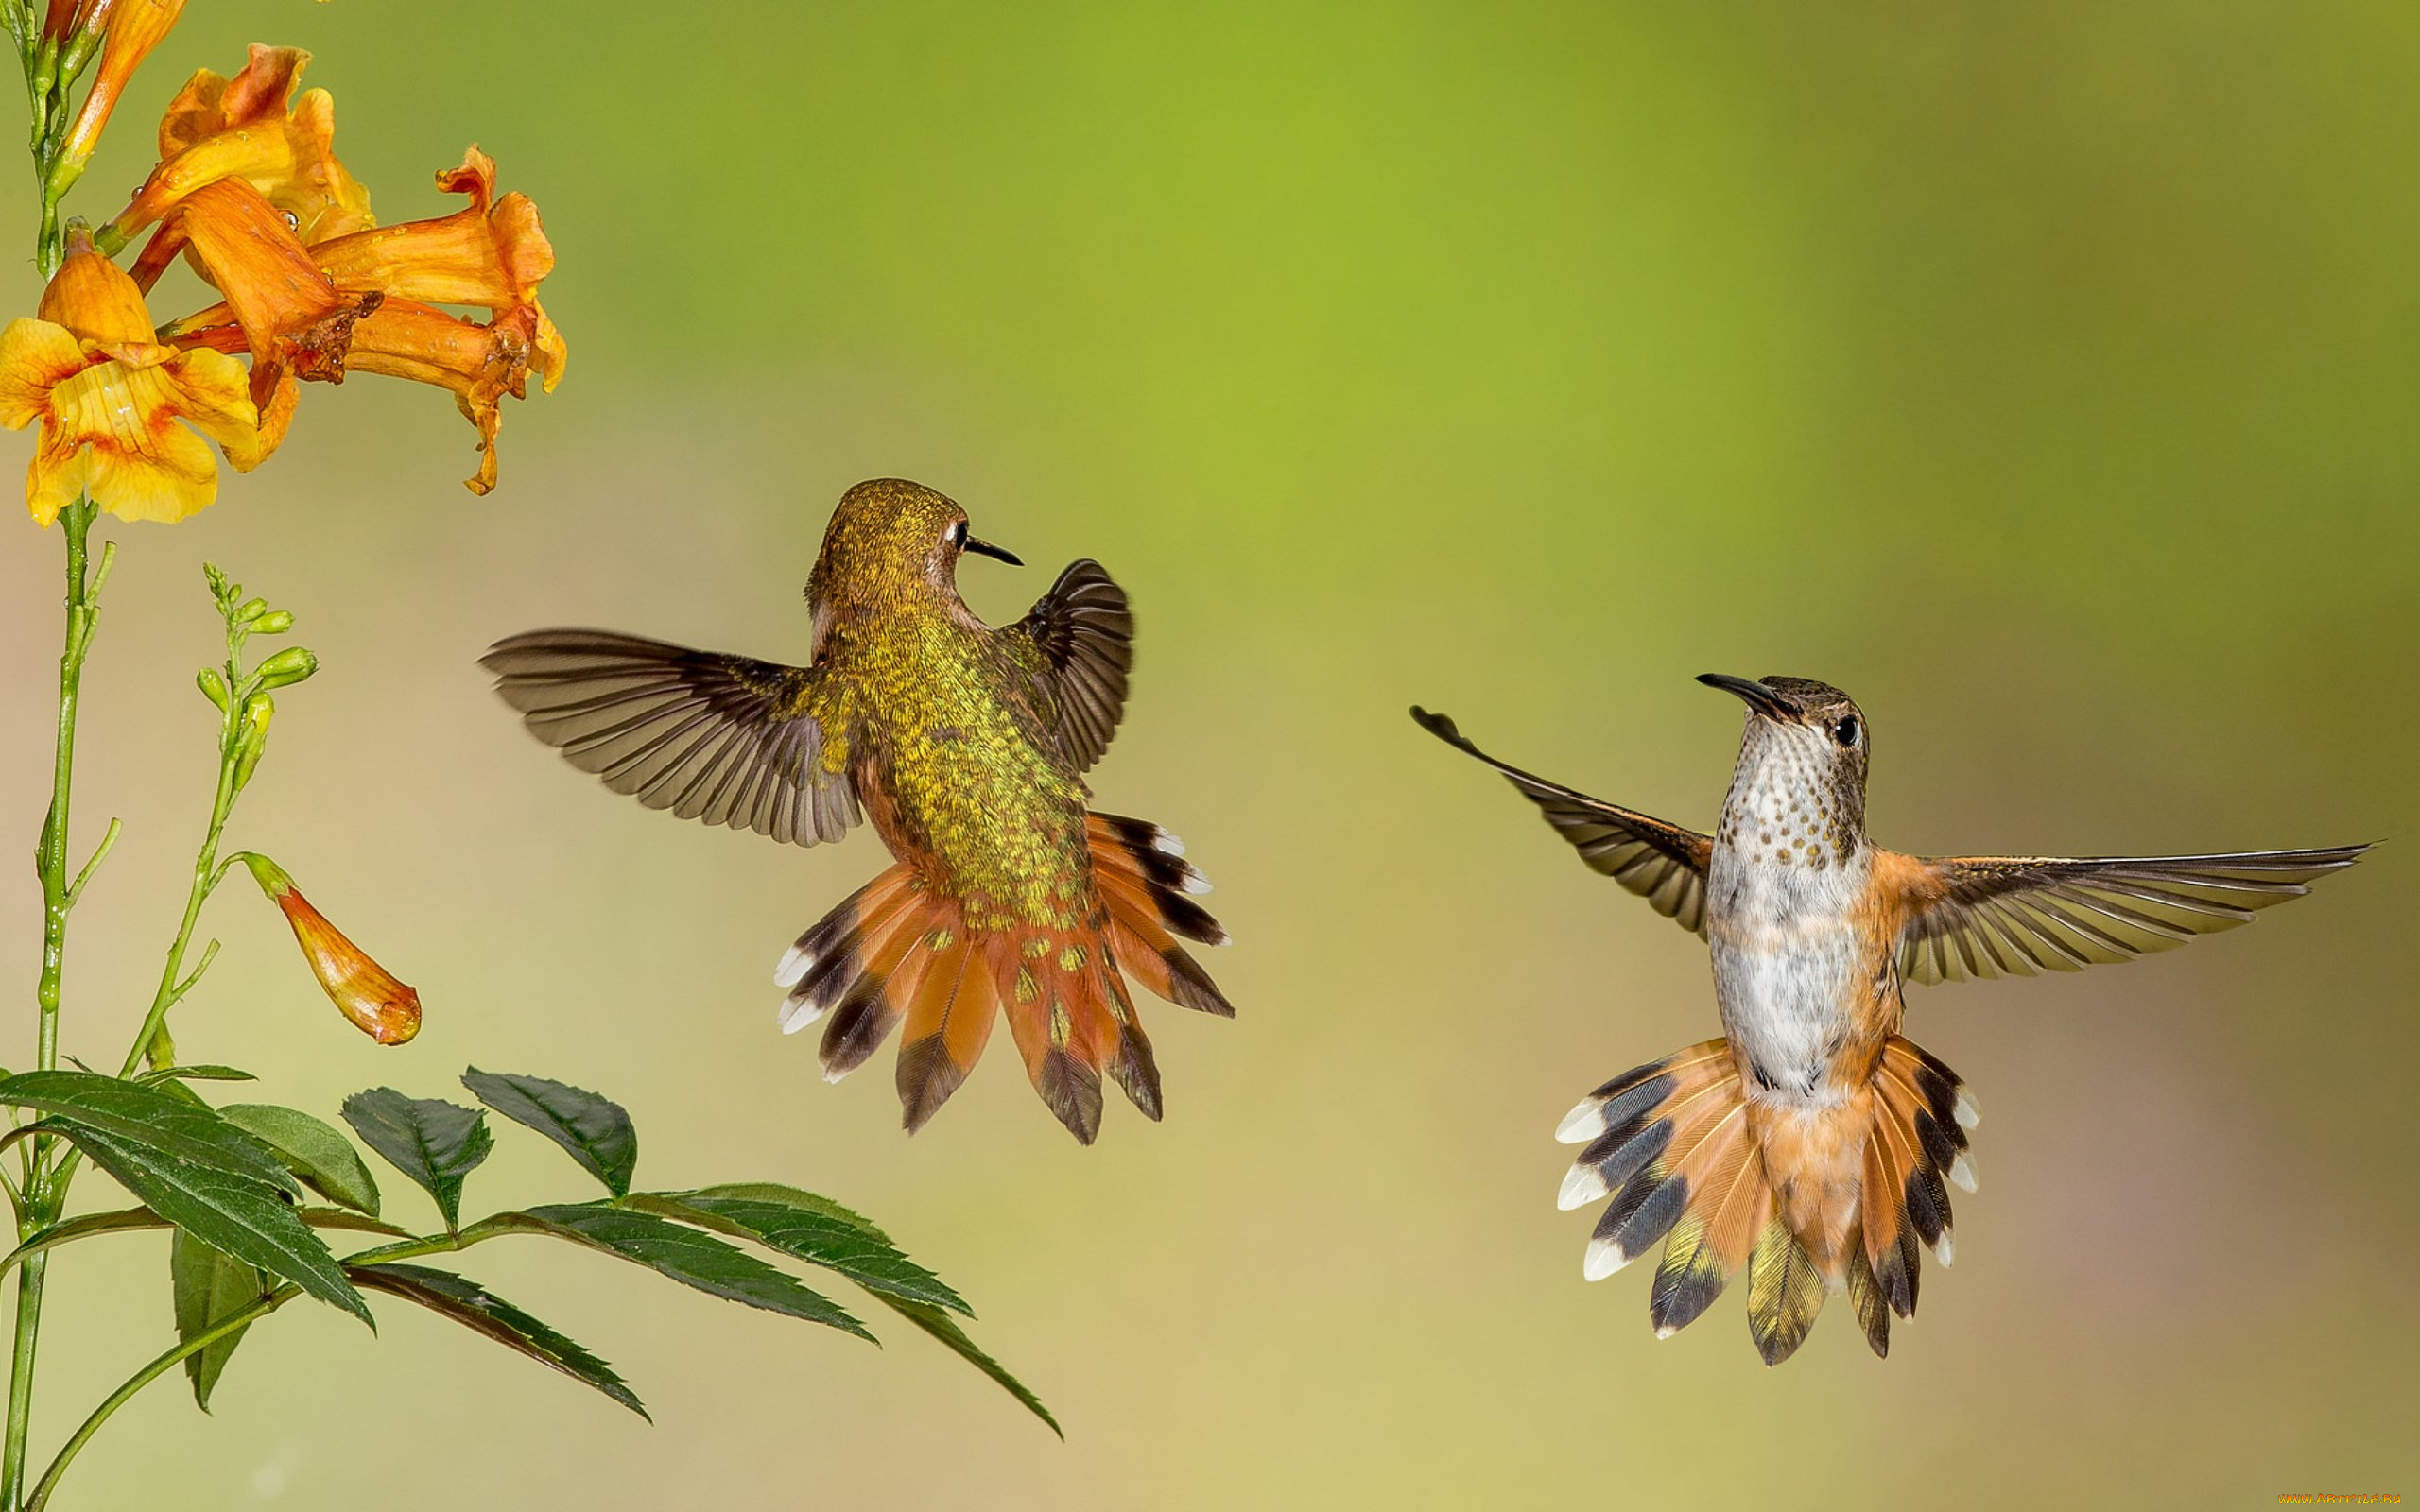 колибри, животные, самая, маленькая, птица, в, мире, да, само, название, птицы, очень, красивое, королева, нектара